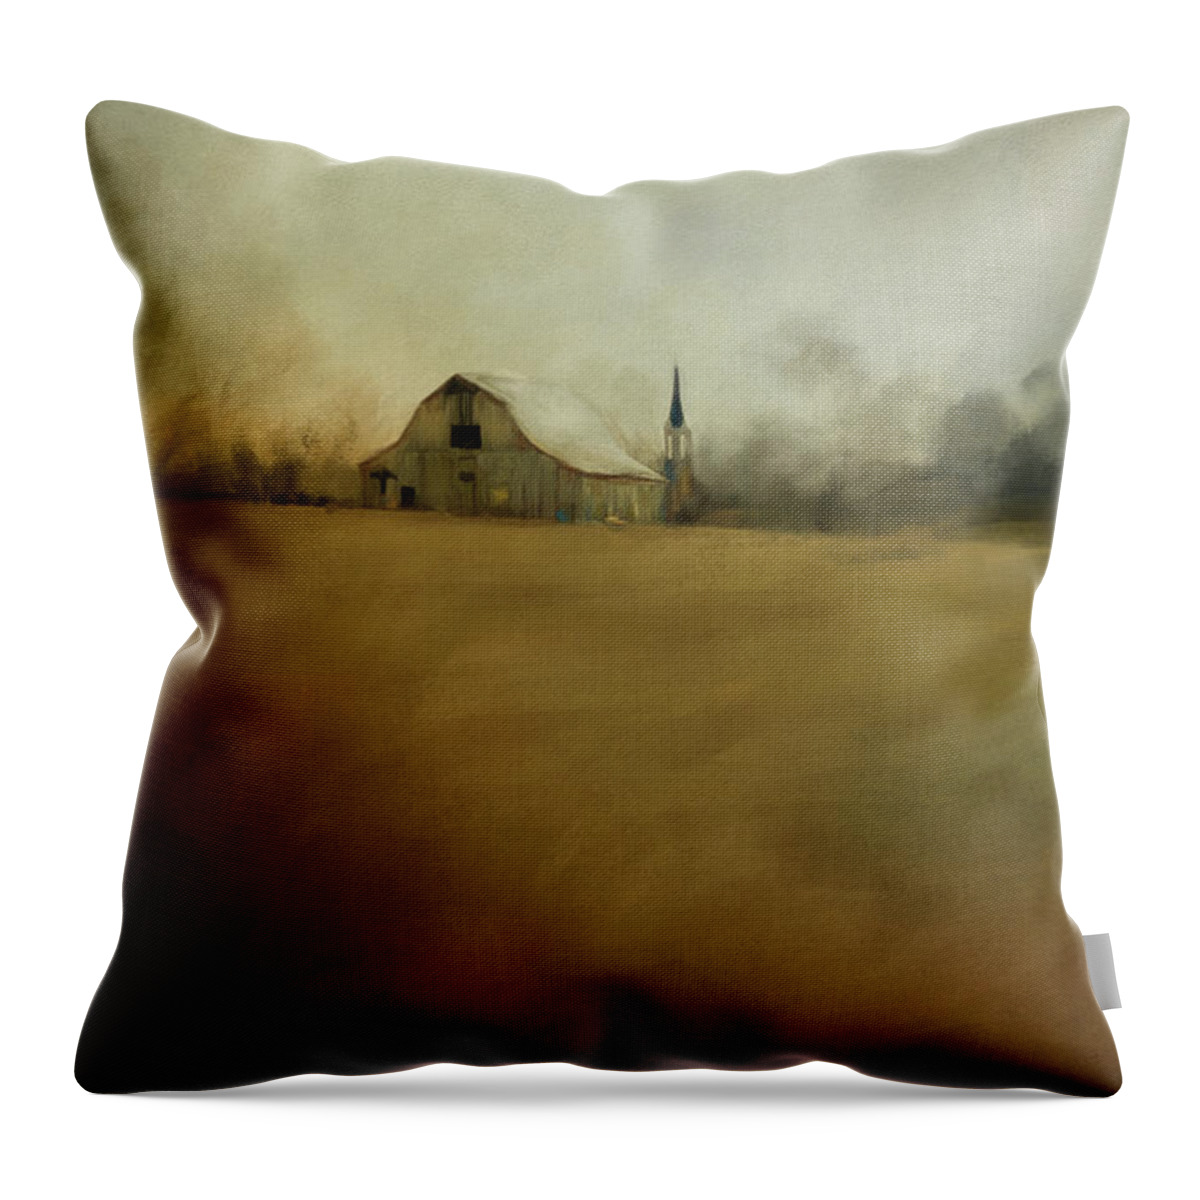 Jai Johnson Throw Pillow featuring the painting Farm Memories by Jai Johnson